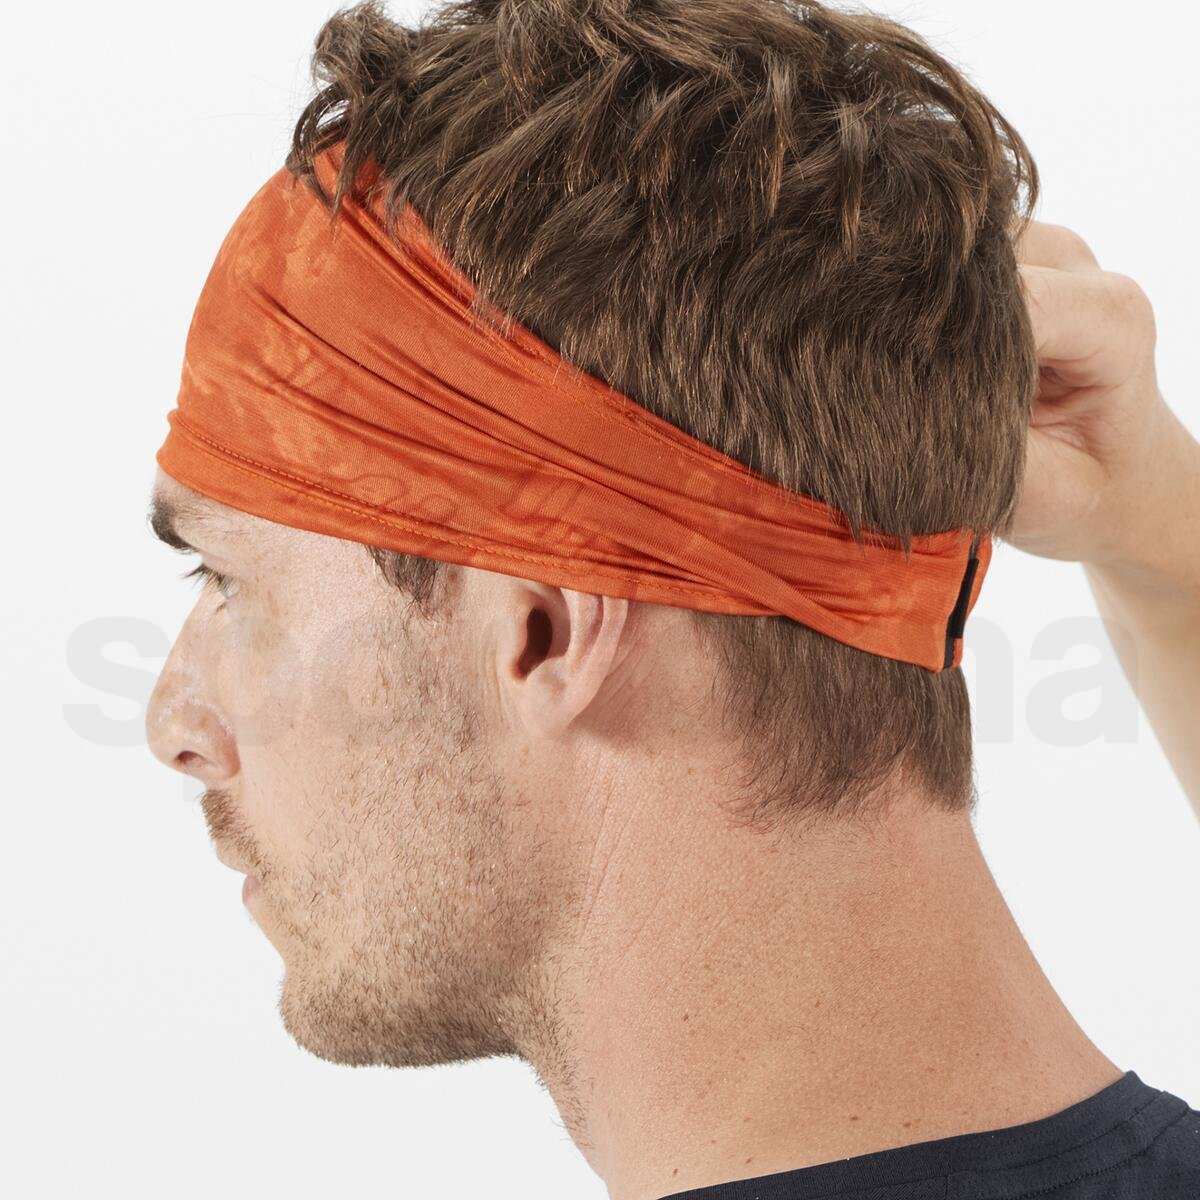 Čelenka Salomon Sense Headband - oranžová